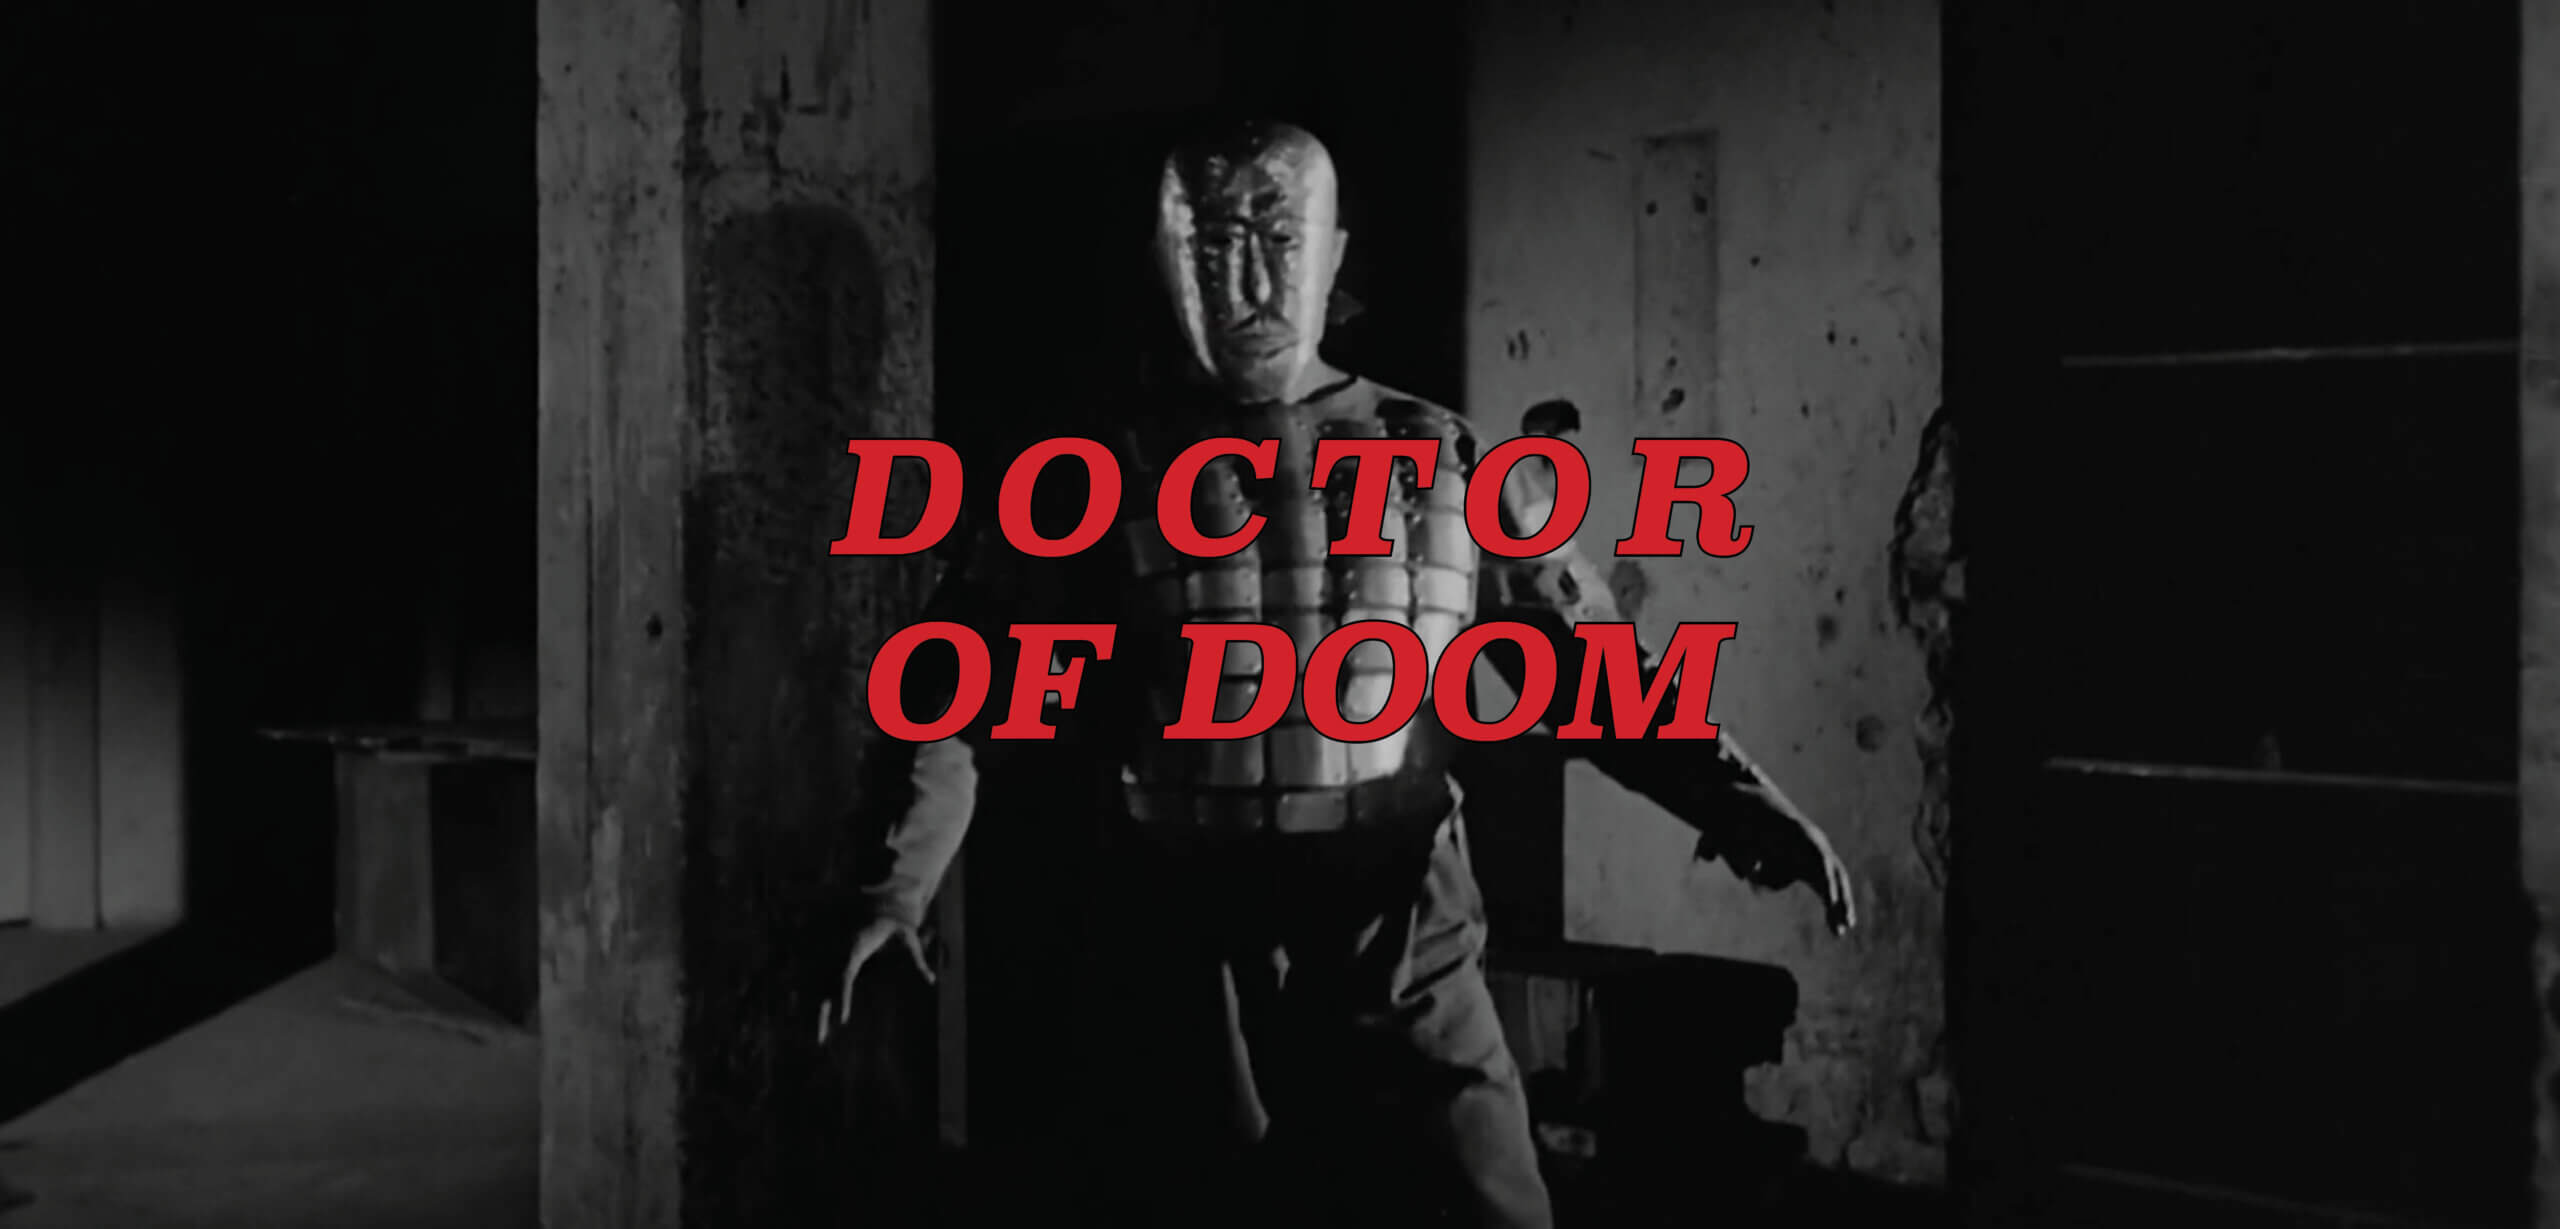 DOCTOR OF DOOM